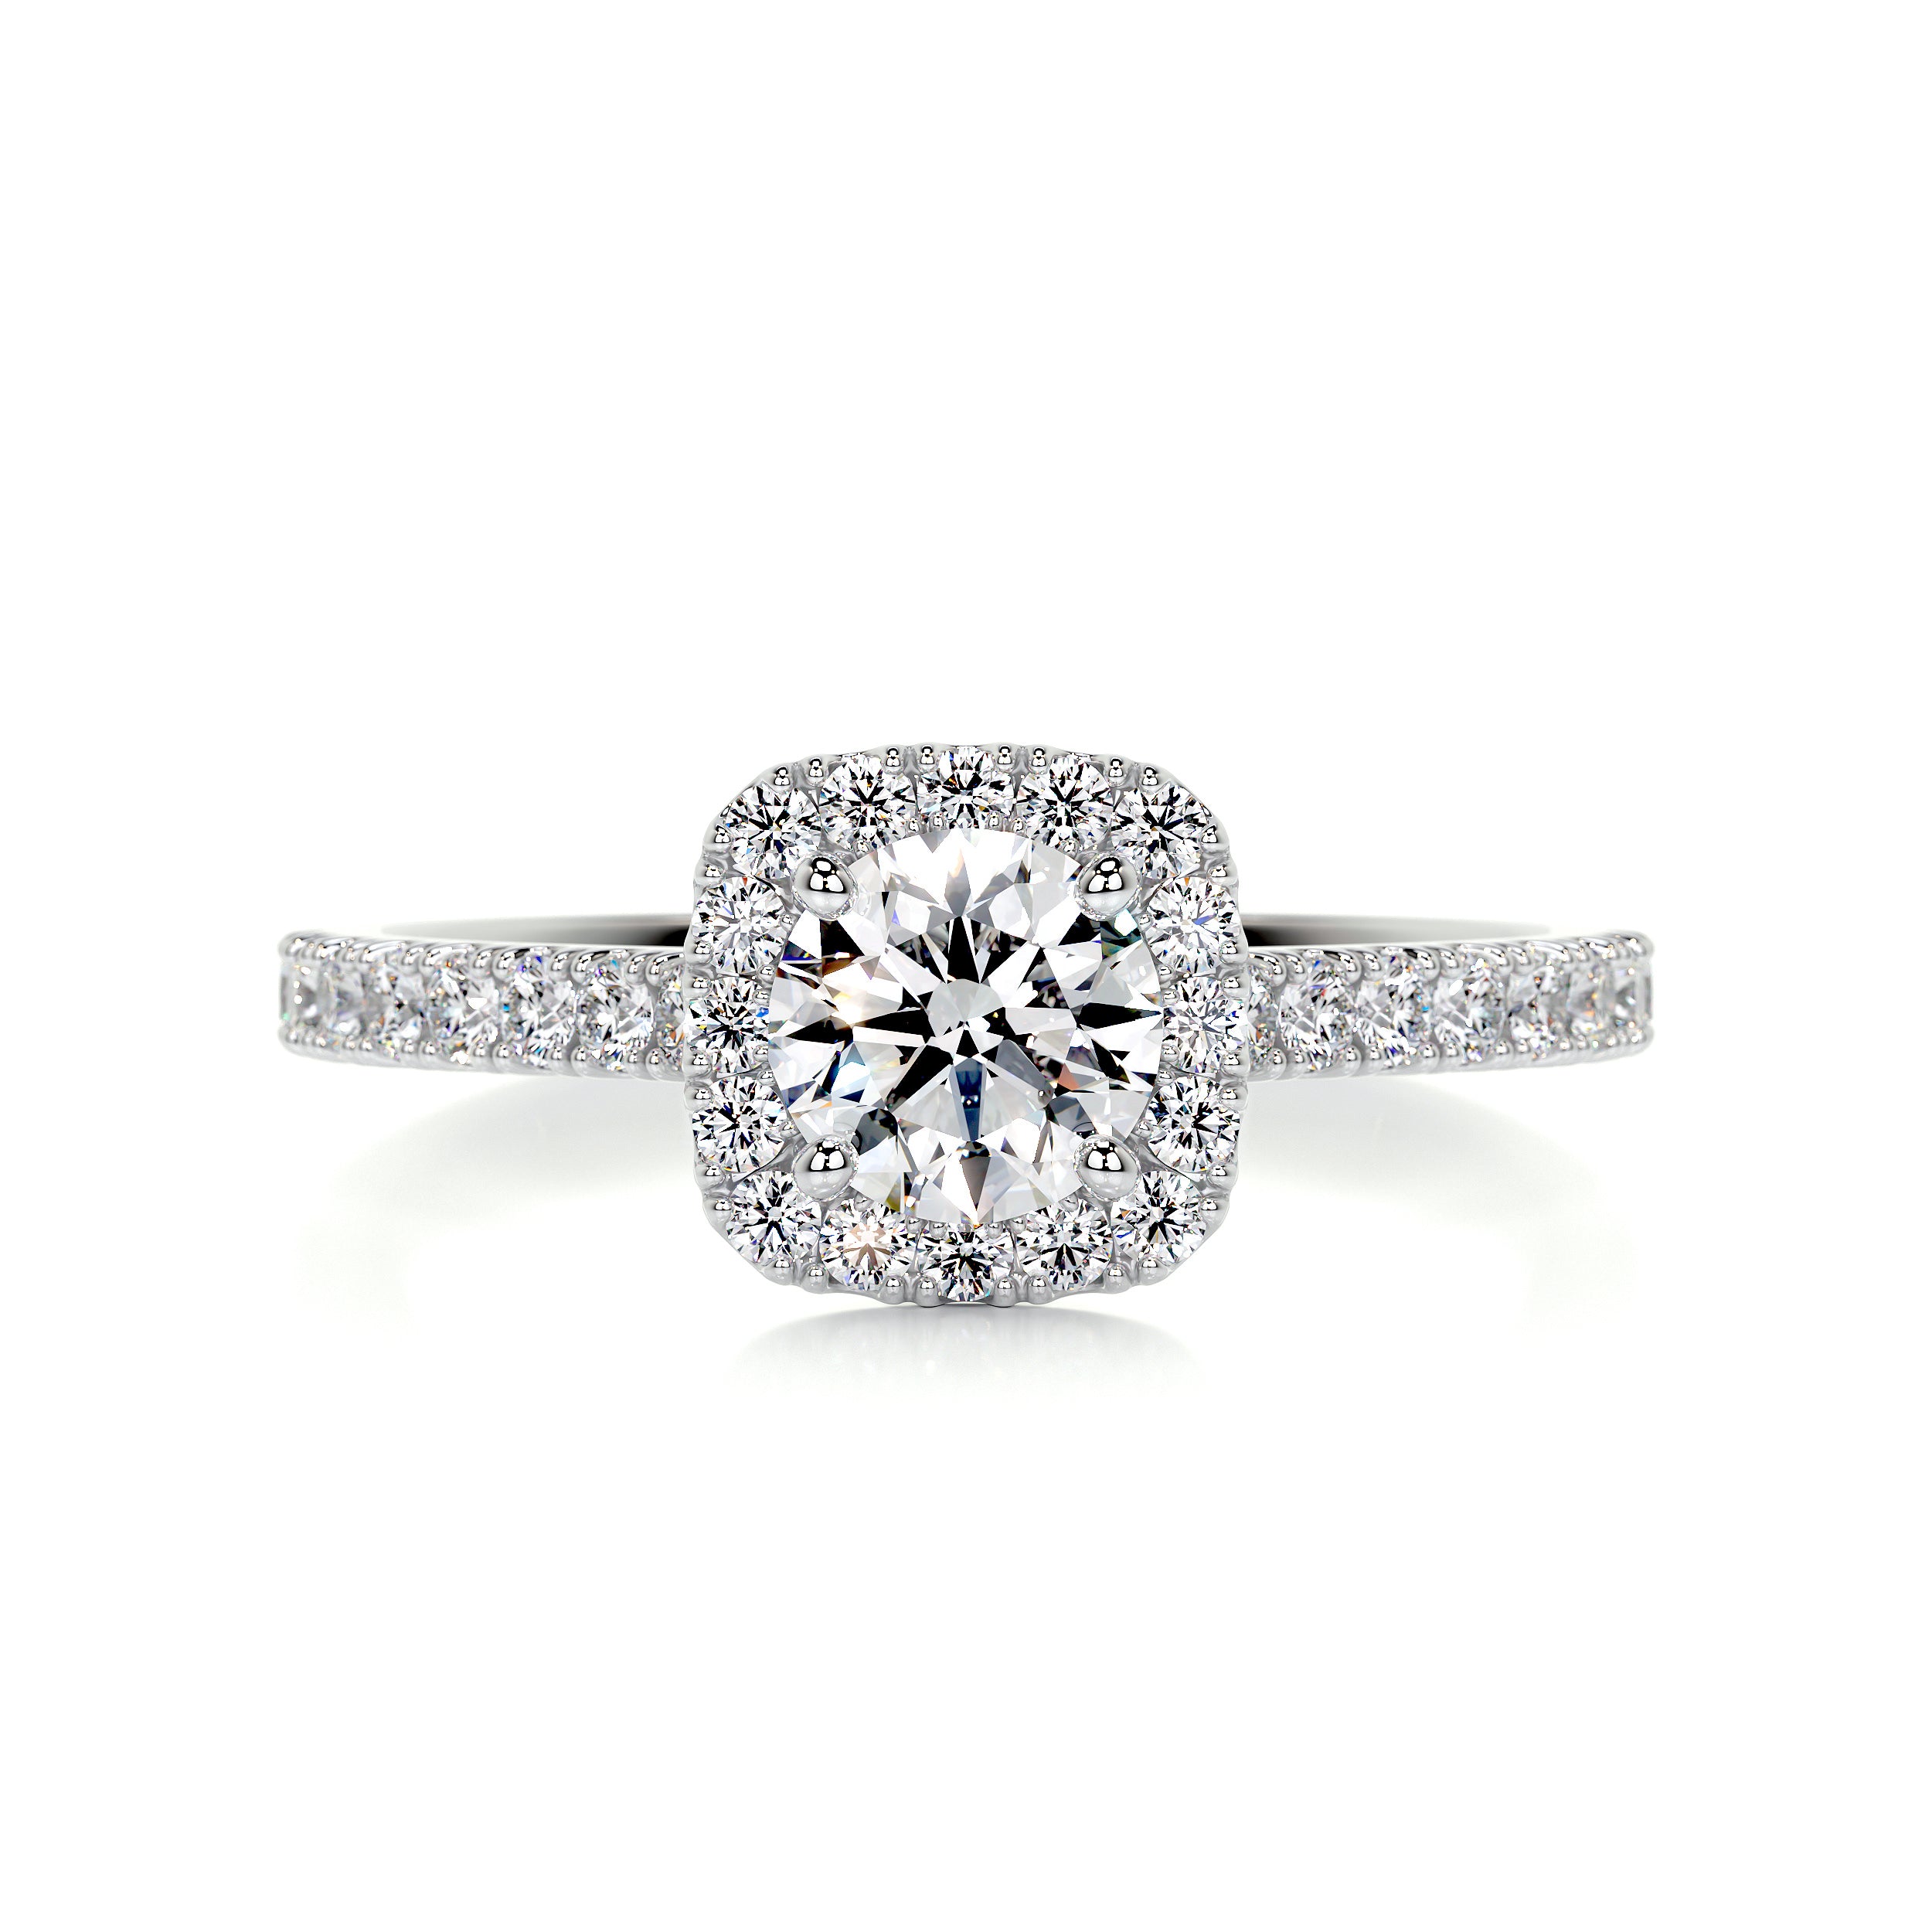 Claudia Diamond Engagement Ring   (0.70 Carat) -Platinum